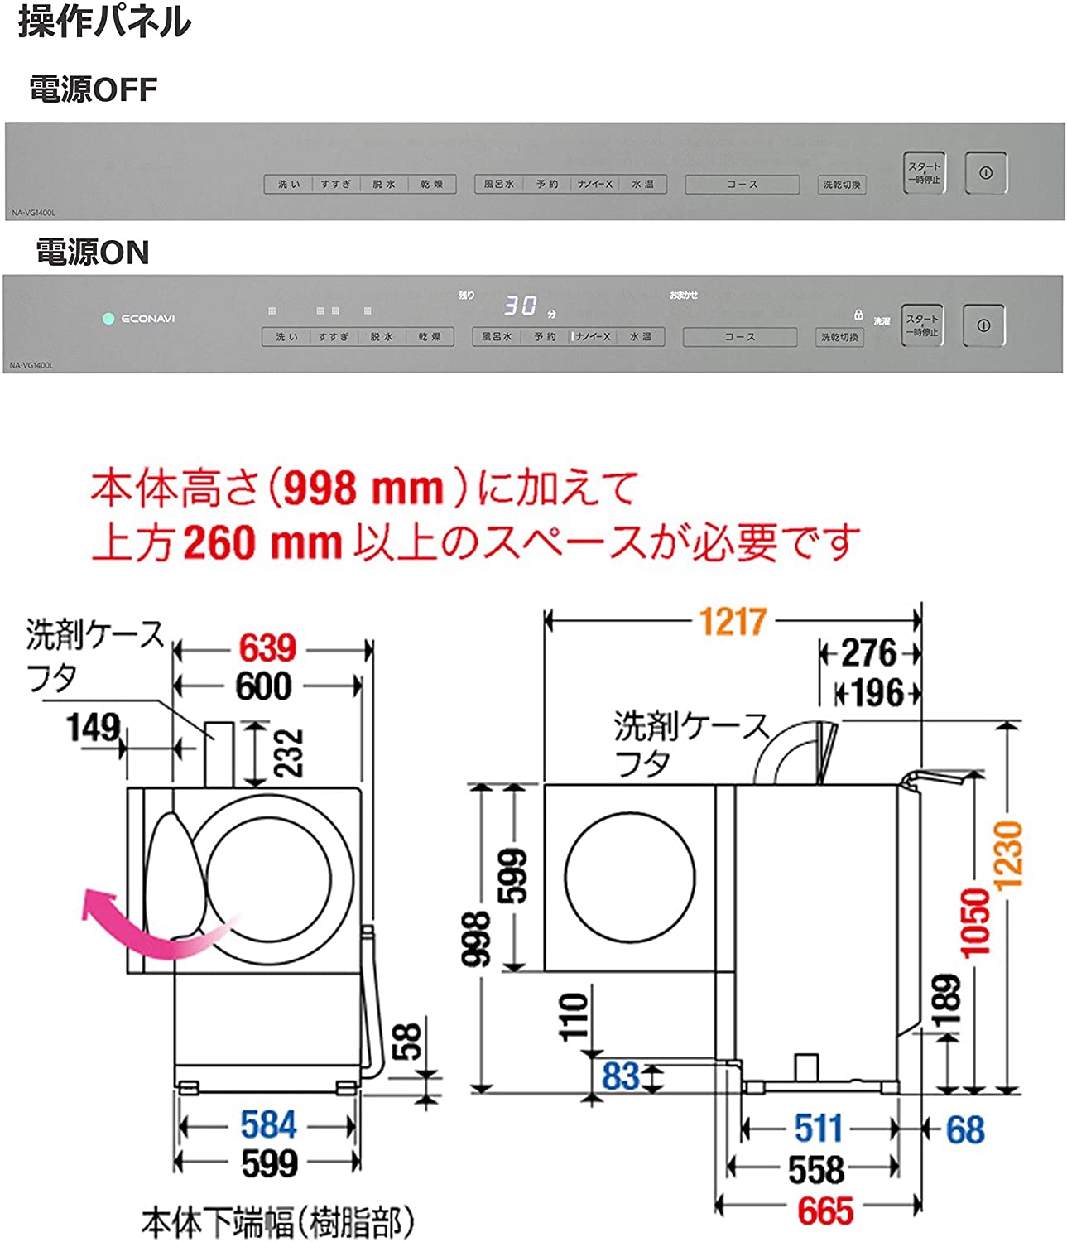 Panasonic(パナソニック) キューブル ななめドラム洗濯乾燥機 NA-VG1400の商品画像サムネ4 